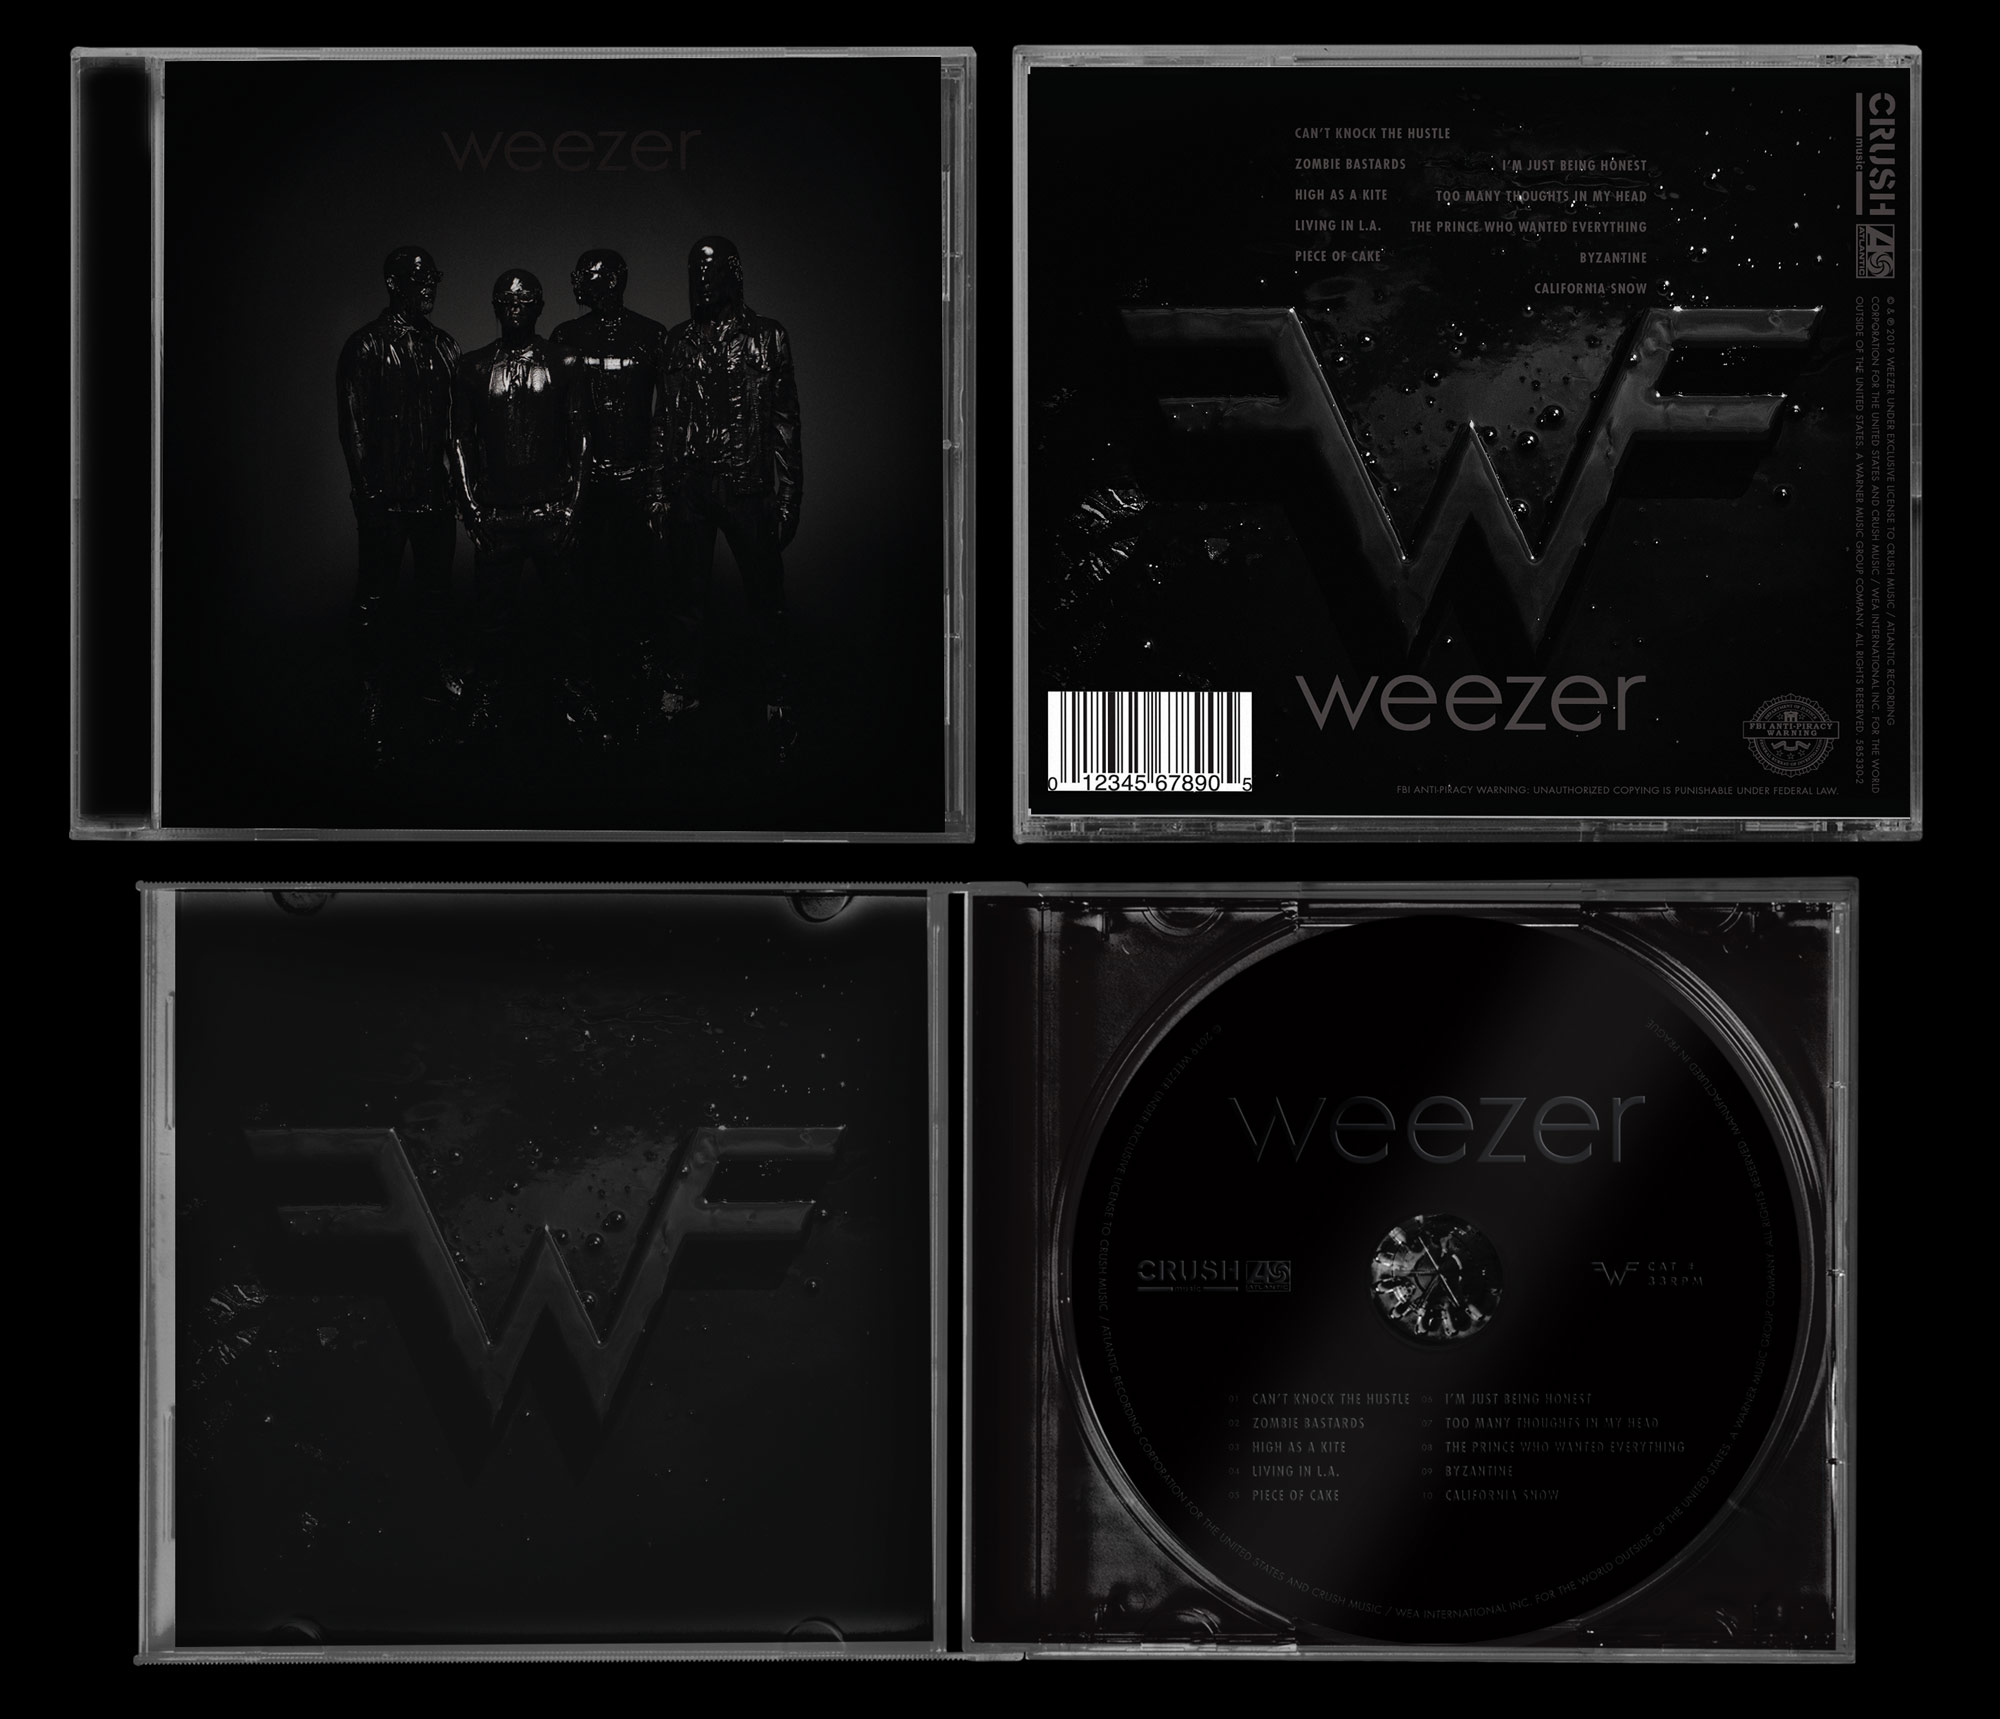 weezer-cd